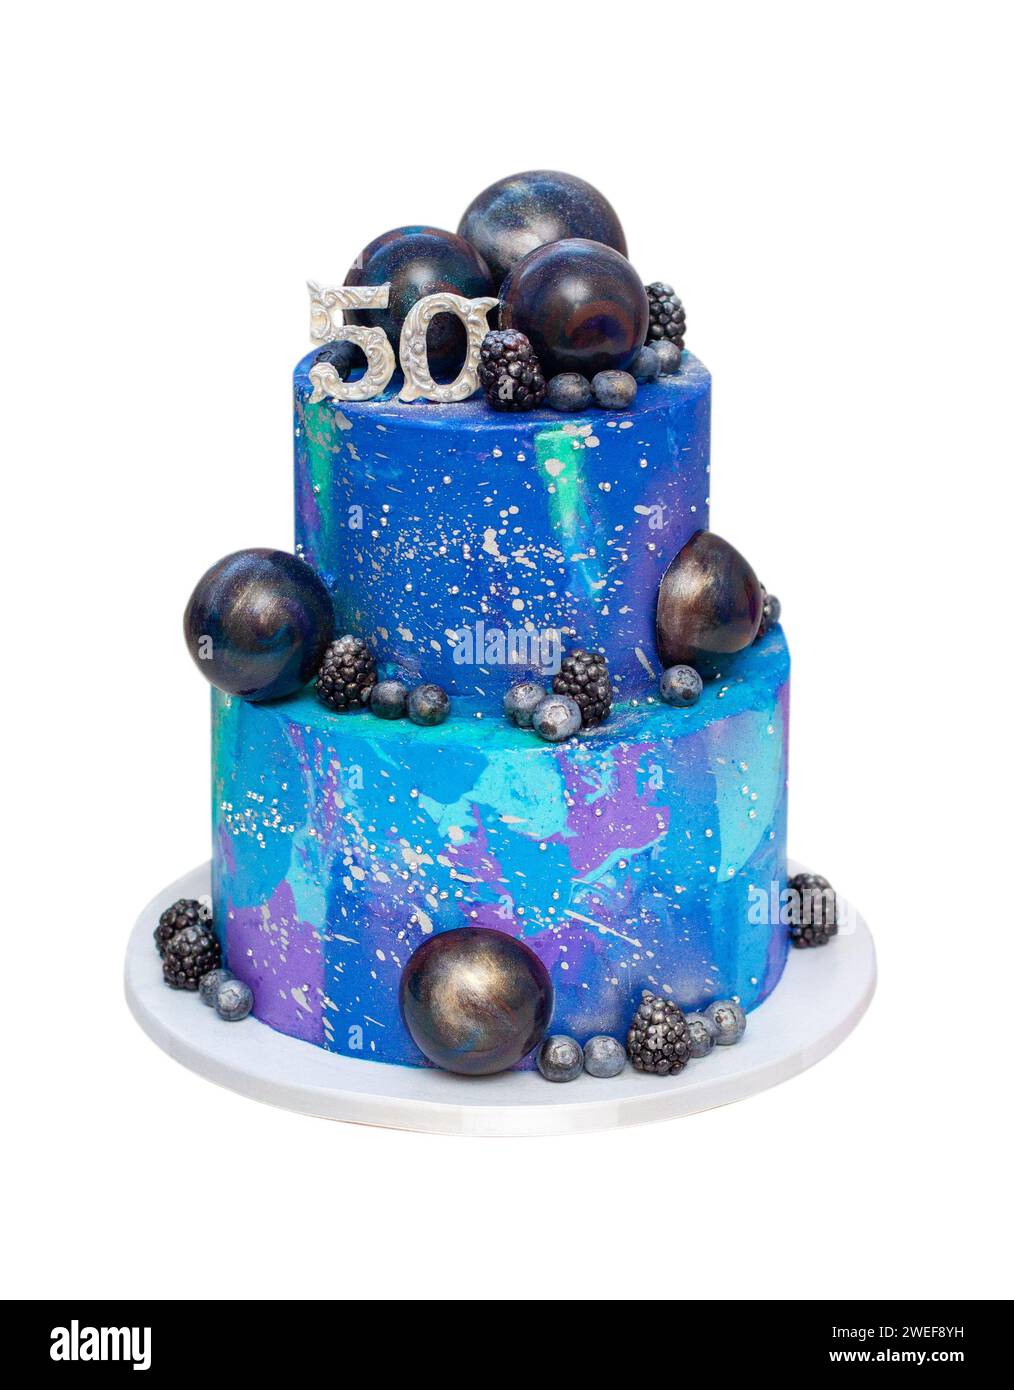 Bluey and Bingo Cake - Un tierno y hermoso pastel para celebrar el